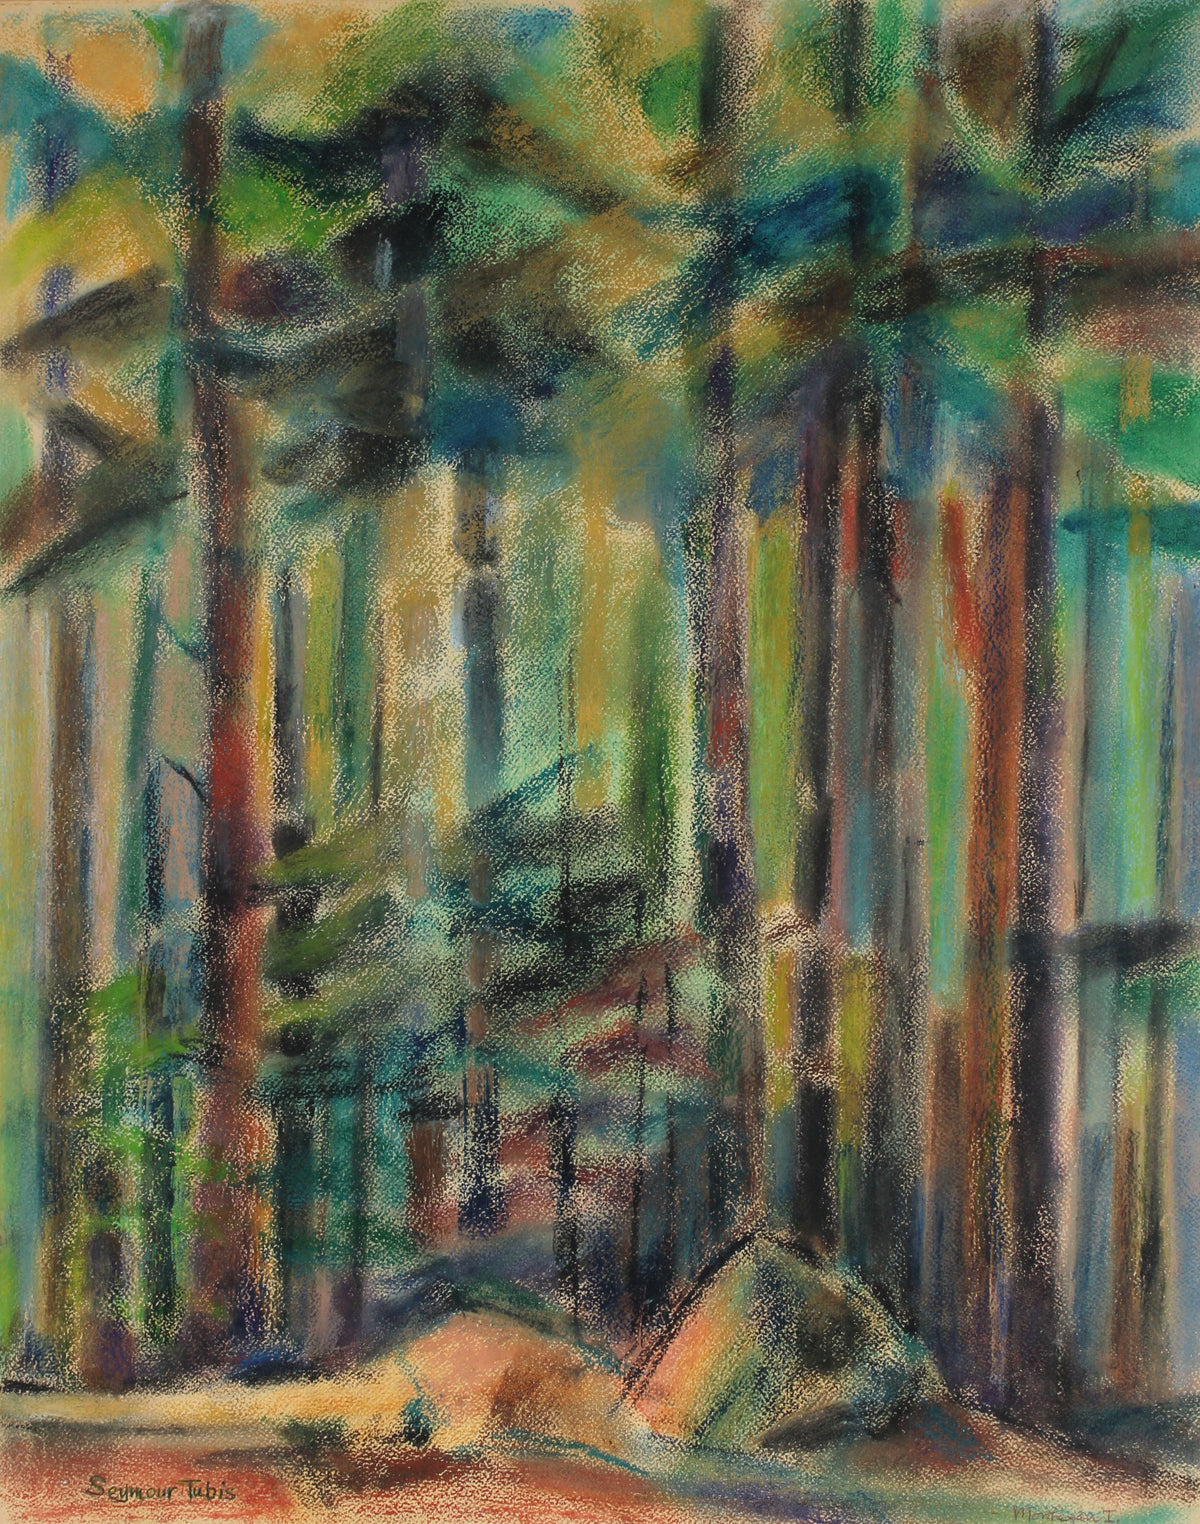 Abstracted Redwood Trees&lt;br&gt;1962 Pastel&lt;br&gt;&lt;br&gt;#66777